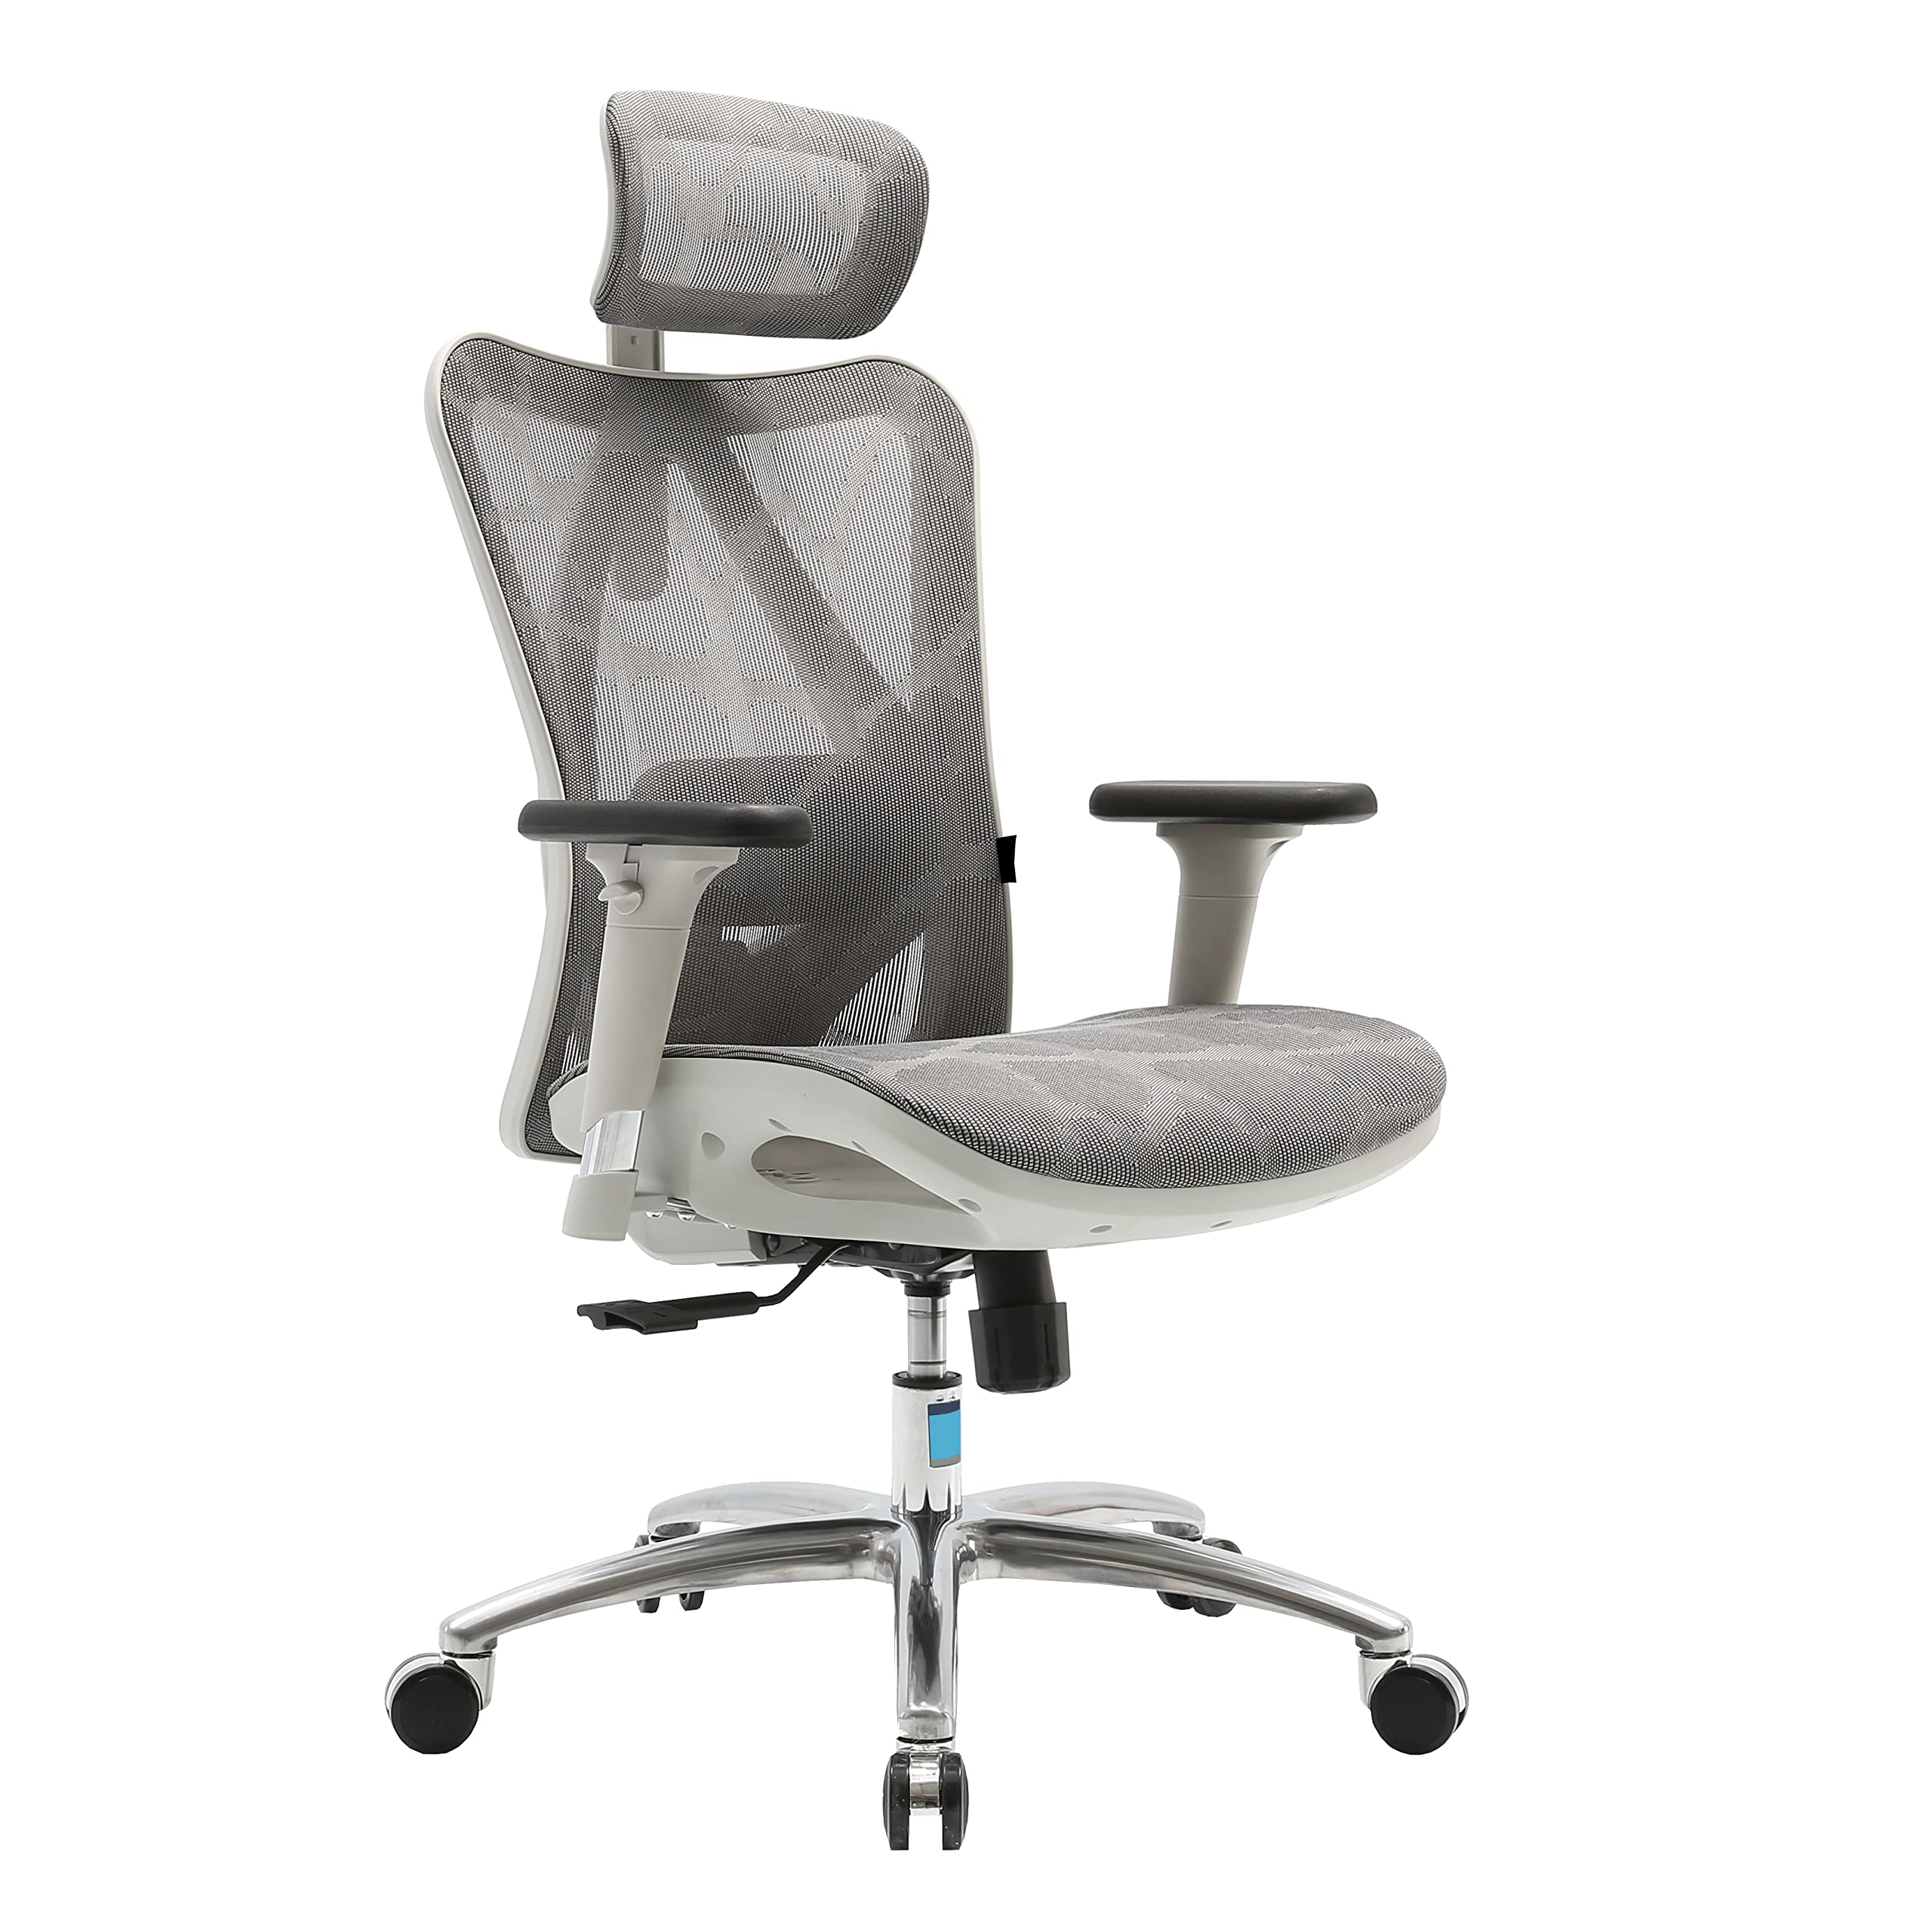 Angel Bürostuhl ergonomisch | Grauer Schreibtischstuhl hat verstellbare Lordosenstütze & Kopf- und Armlehne | Office Chair mit Höhenverstellung und Wippfunktion | Bürostuhl 150 kg belastbar